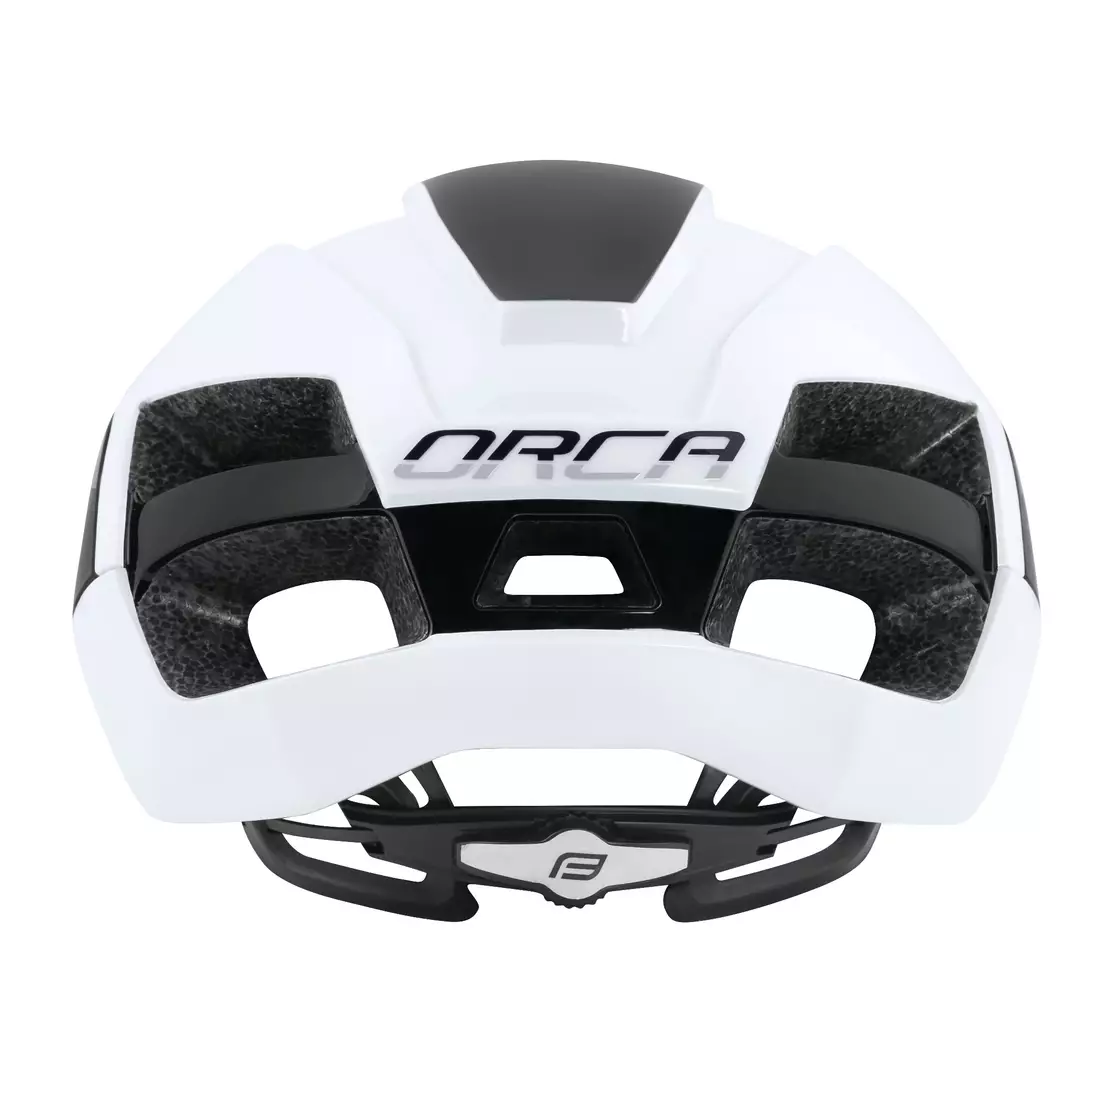 FORCE road bike helmet ORCA black/white